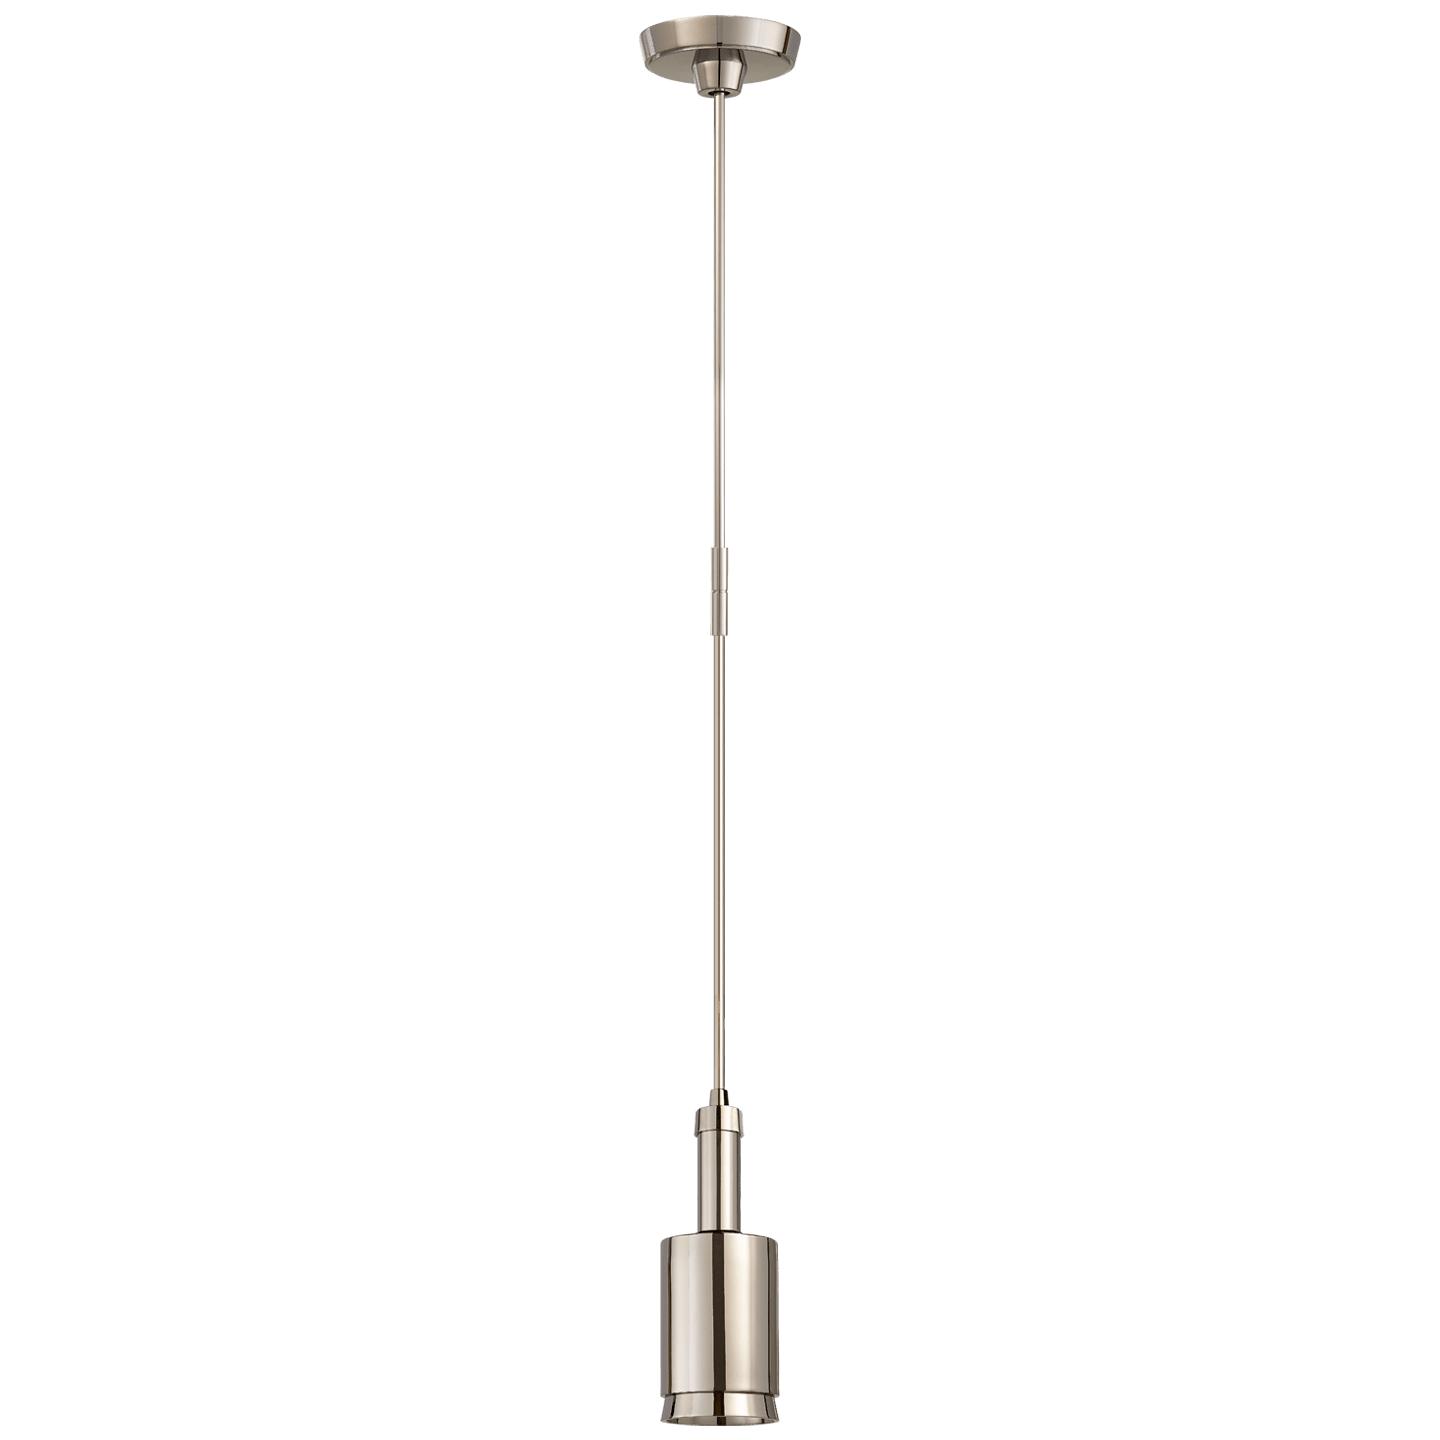 Купить Подвесной светильник Anders Small Cylindrical Pendant в интернет-магазине roooms.ru